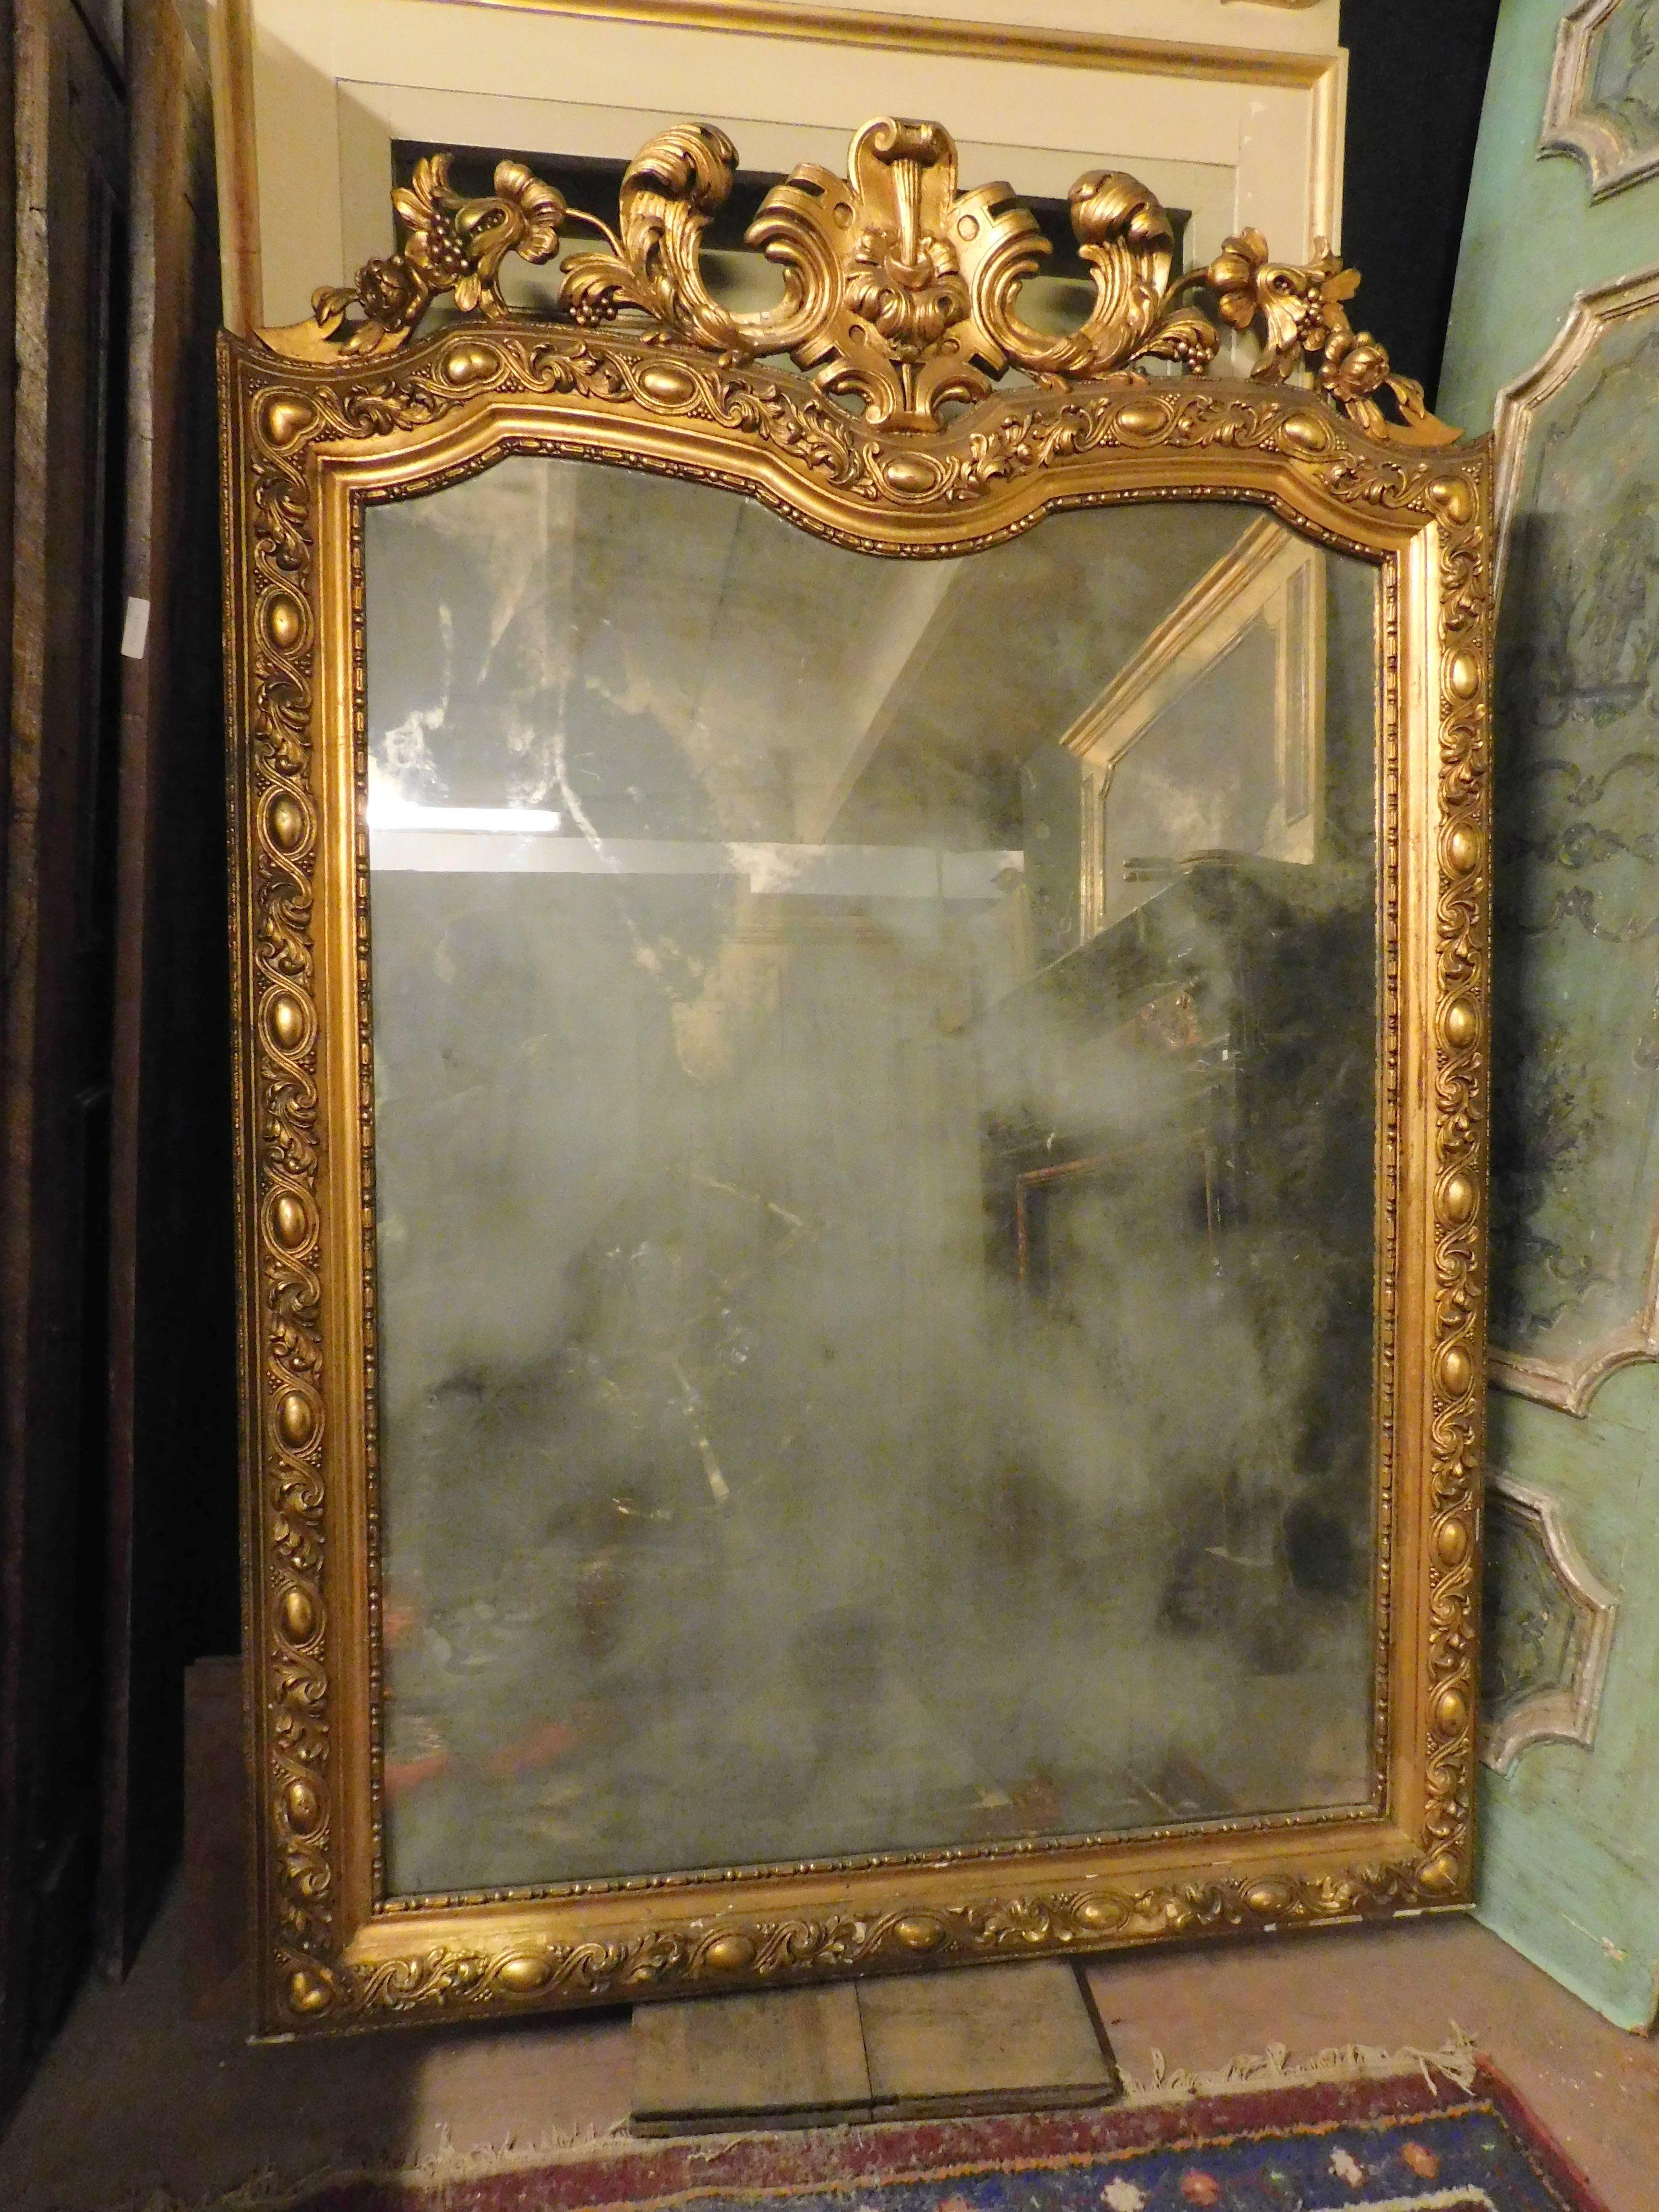 Miroir ancien en bois, richement doré et à cimaises sculptées, avec miroir opaque d'origine, construit au 19ème siècle en Italie, placé à l'origine au-dessus d'une cheminée, il peut être adapté aussi bien au mur qu'au-dessus d'un meuble historique